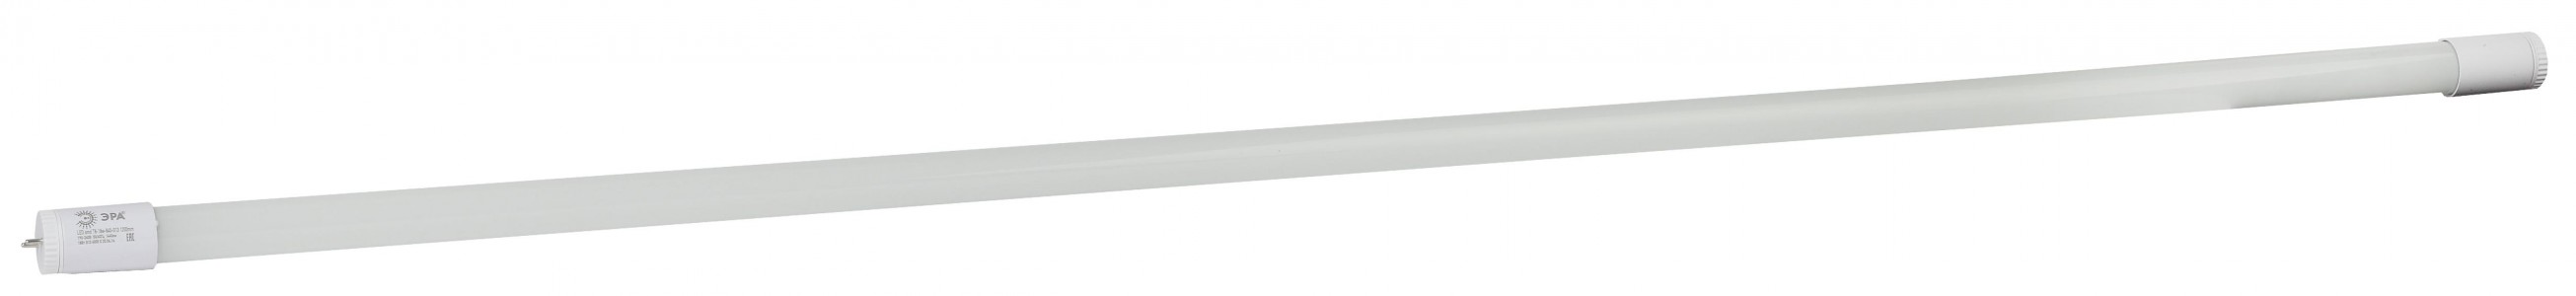 Лампа светодиодная ЭРА T8 18W холодный свет (Б0019928)